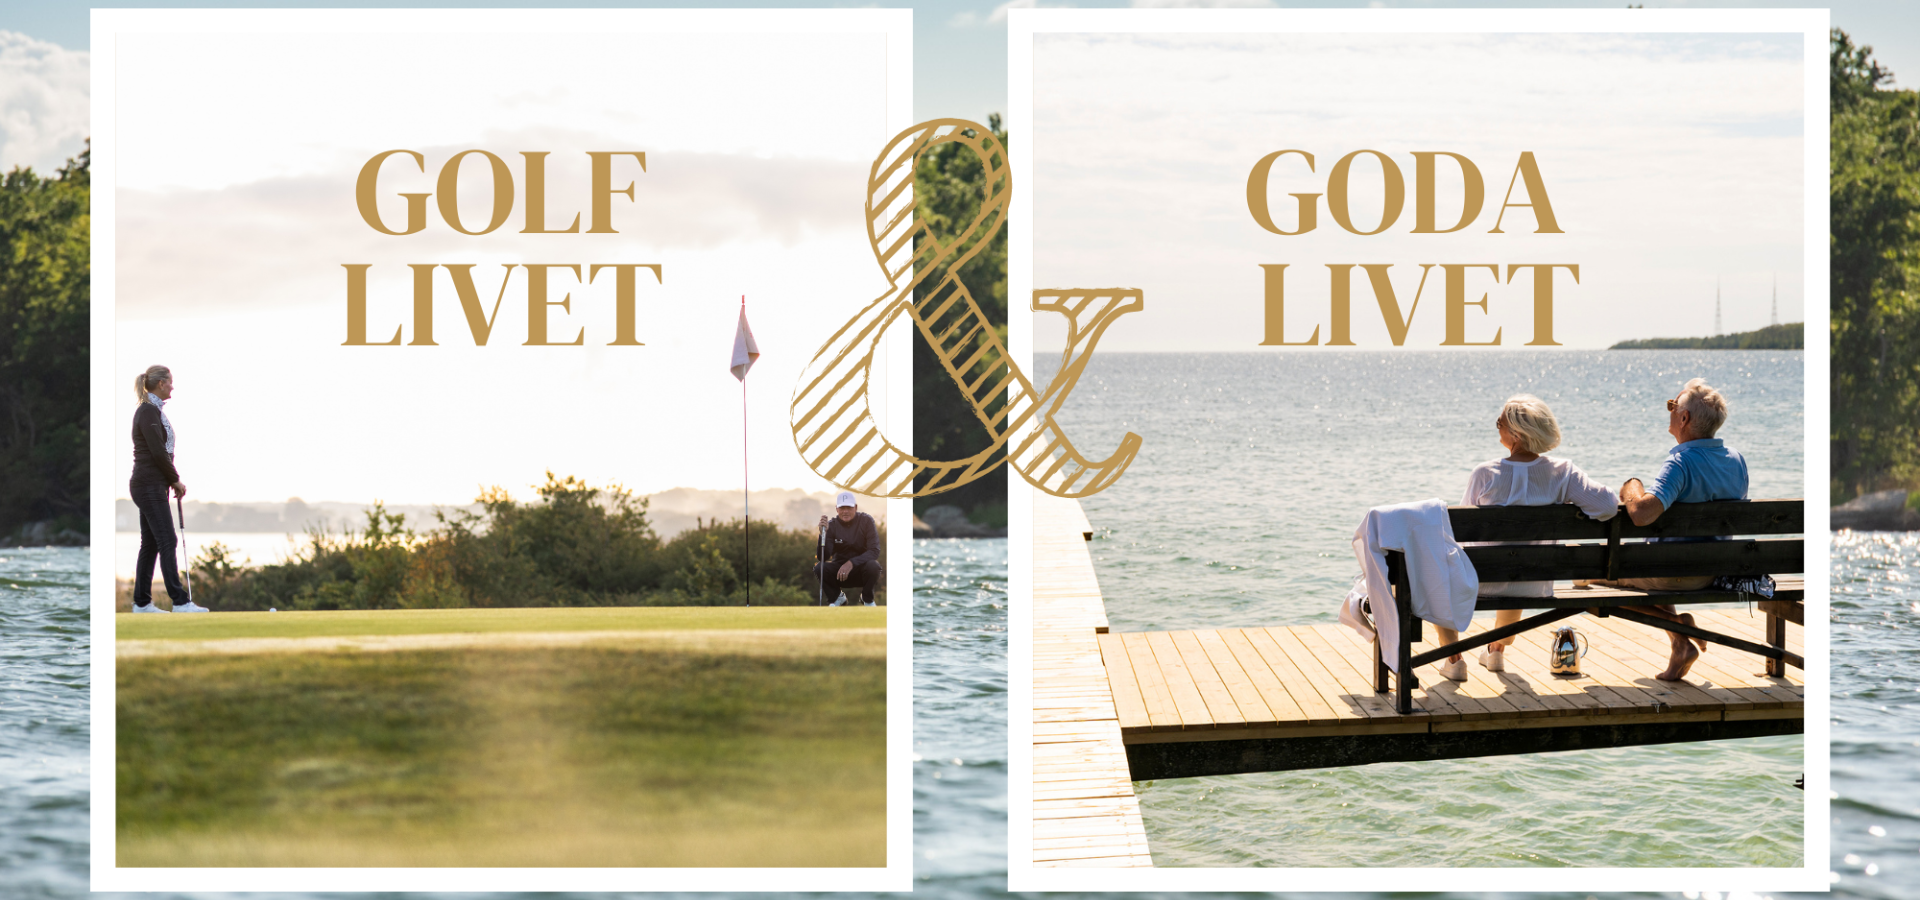 Sveriges golfkust och det goda livet